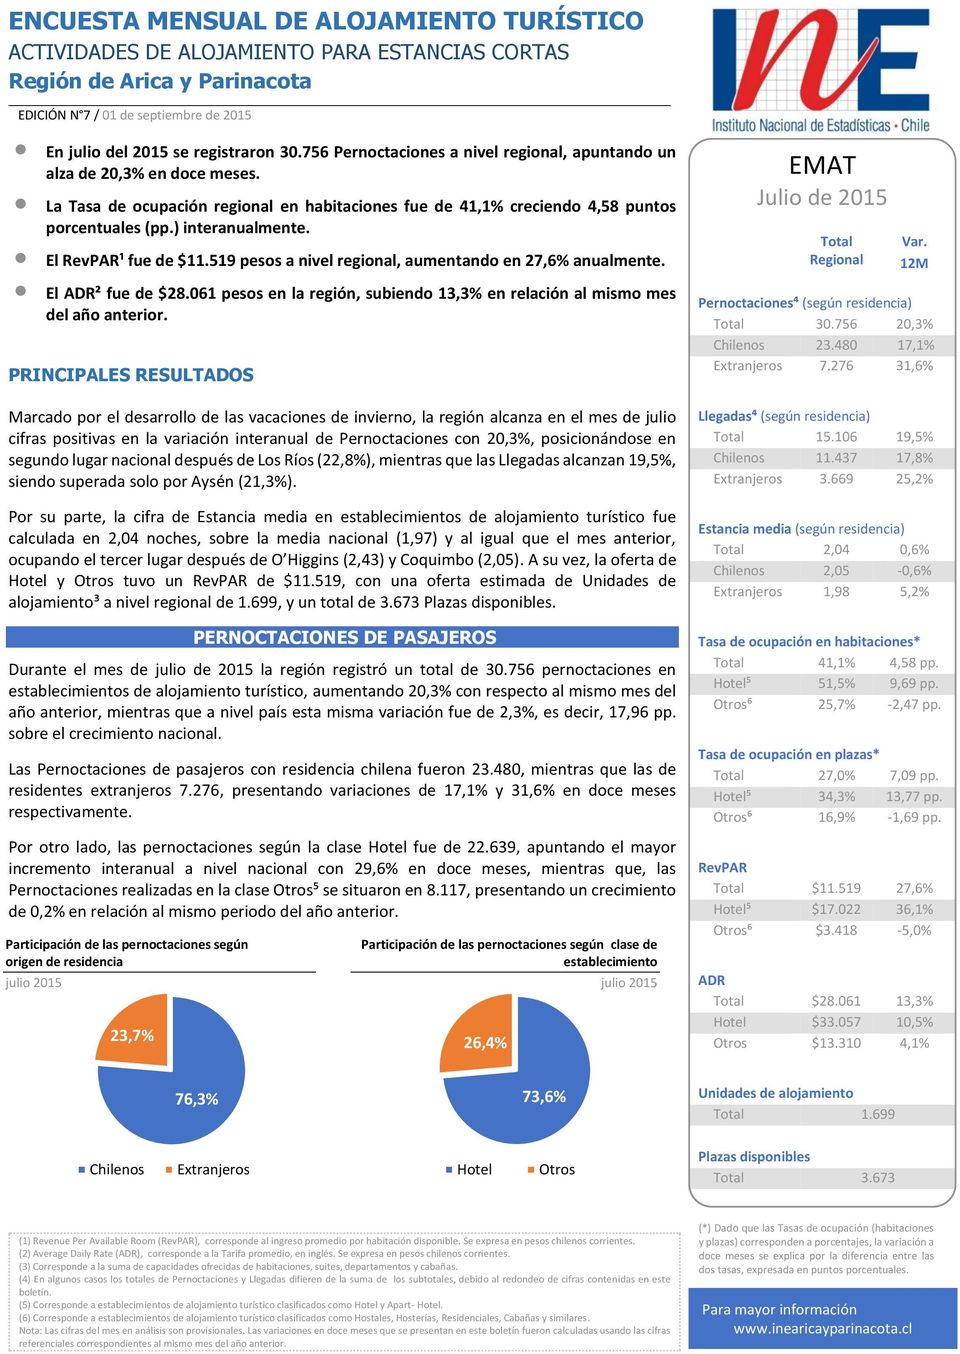 El RevPAR¹ fue de $11.519 pesos a nivel regional, aumentando en 27,6% anualmente. El ADR² fue de $28.61 pesos en la región, subiendo 13,3% en relación al mismo mes del año anterior.